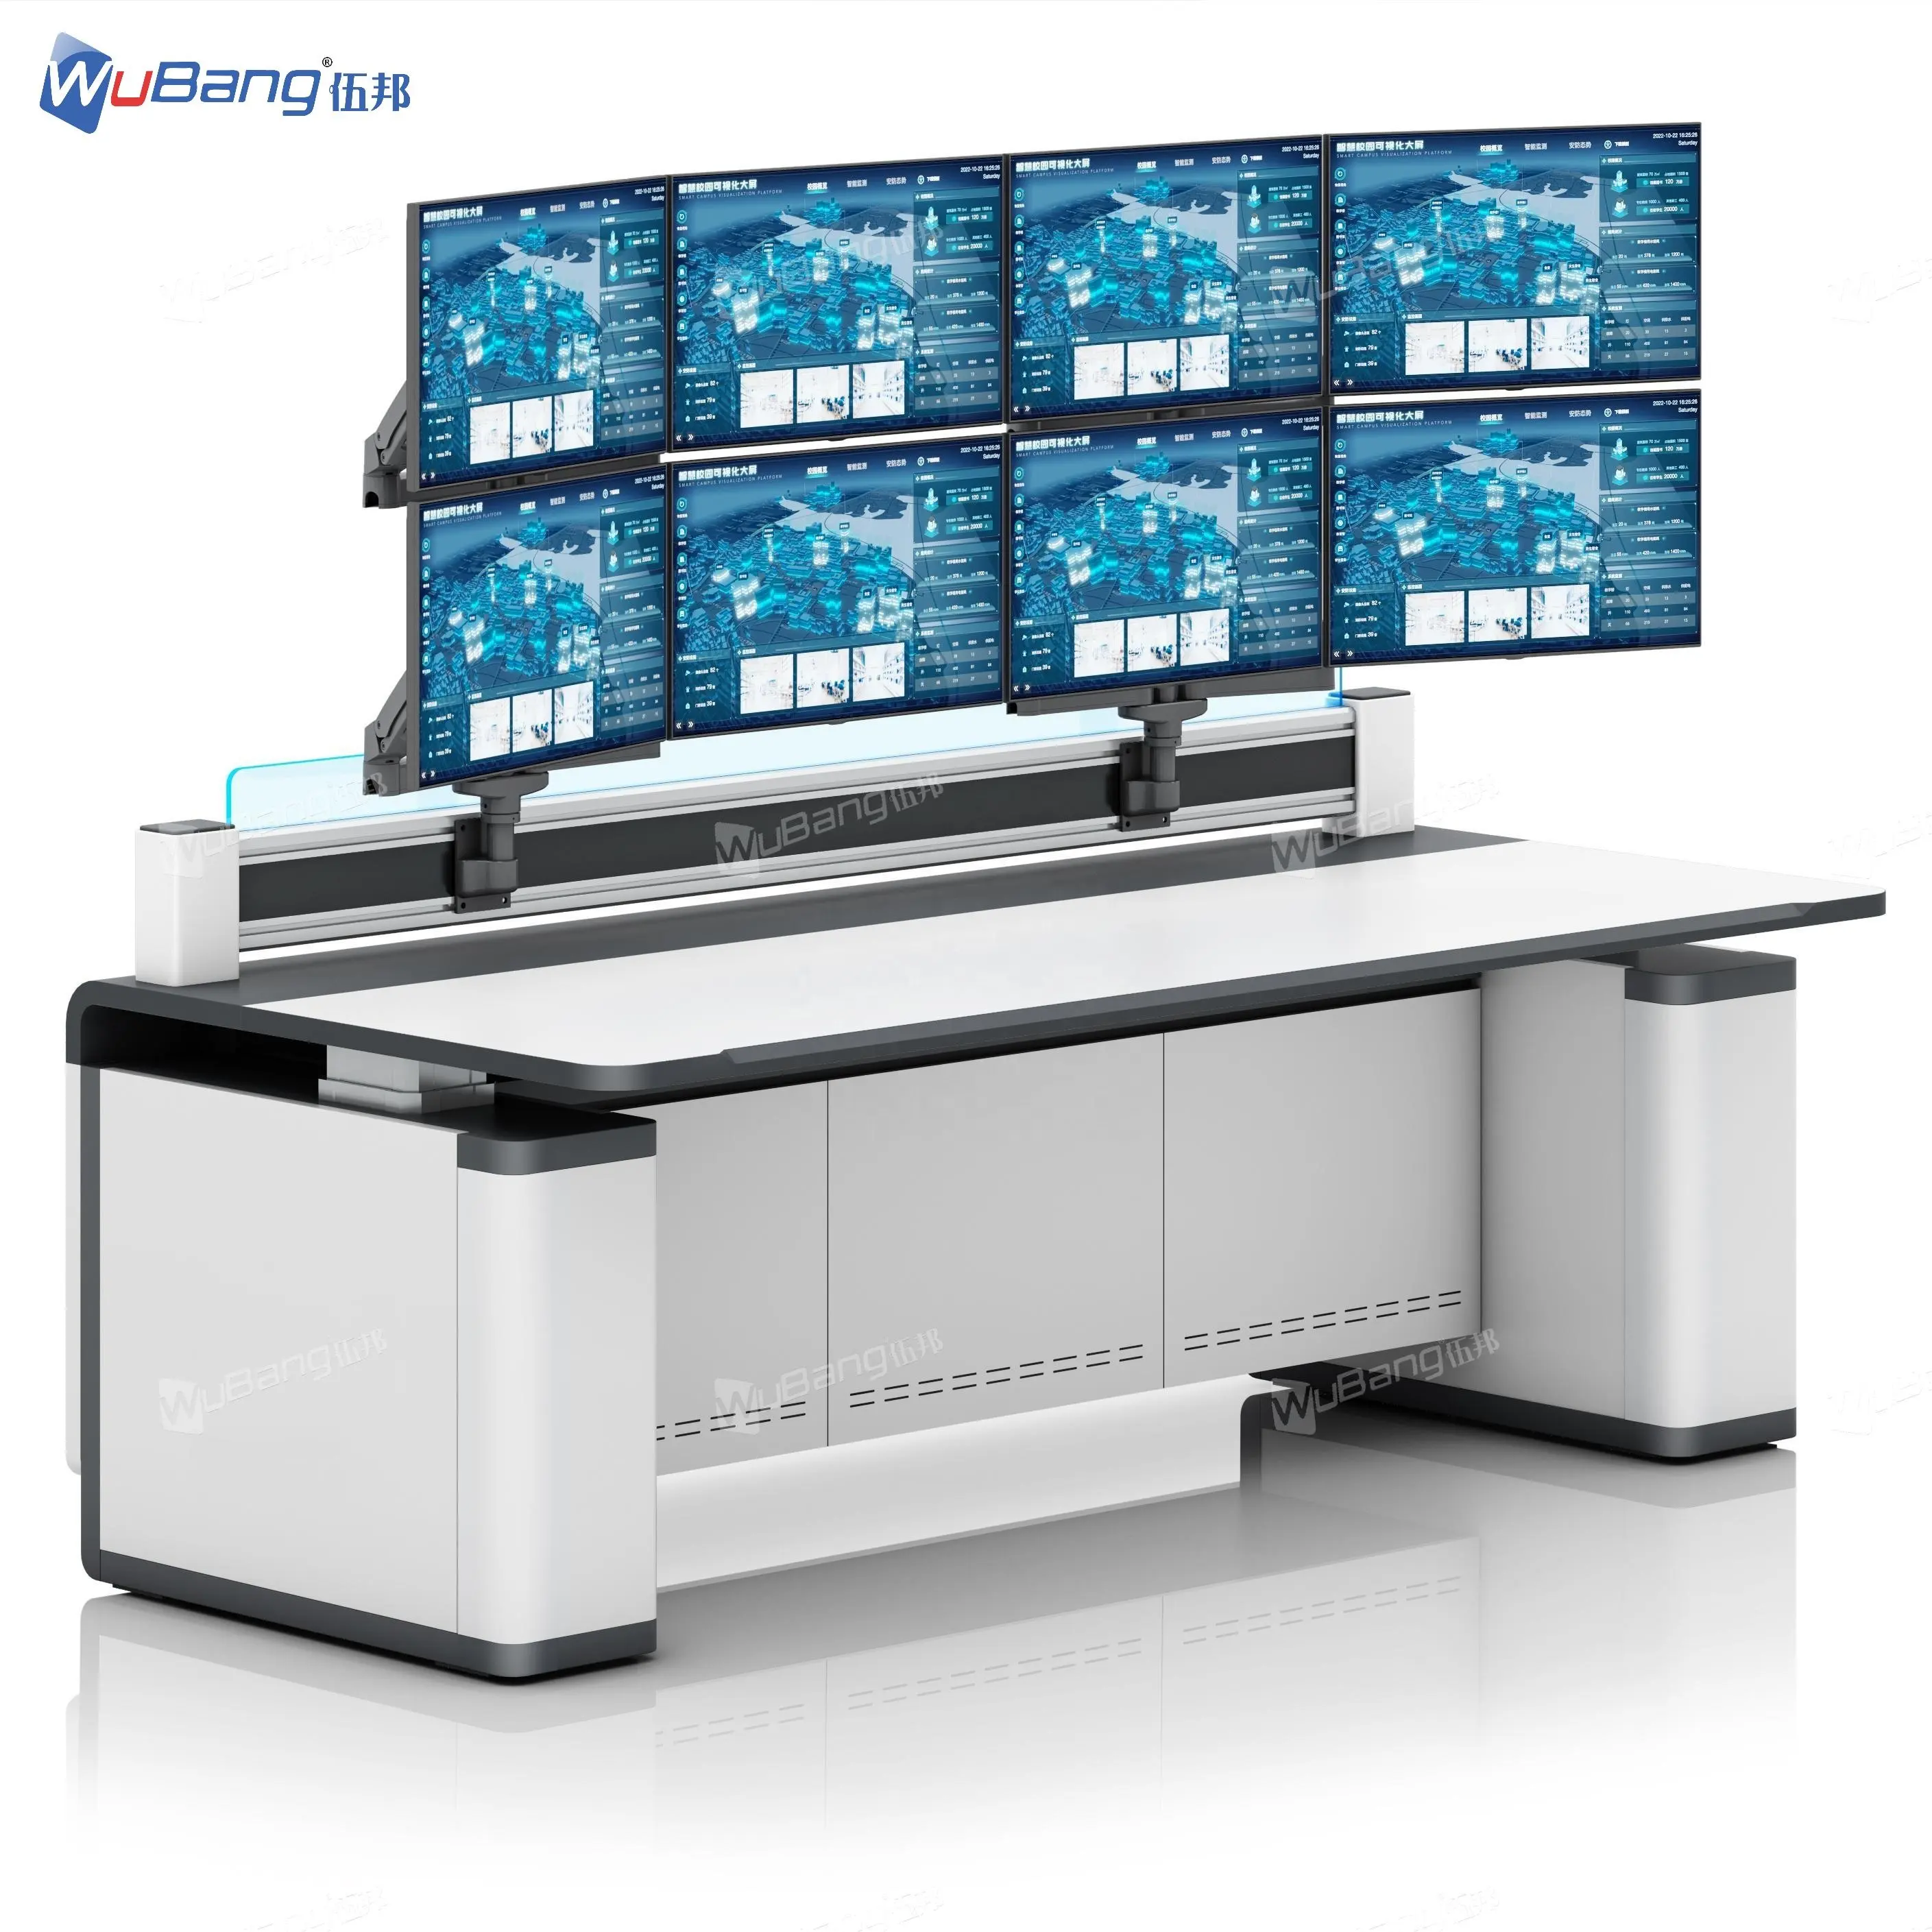 Solusi ruang kontrol Dual Motor mengangkat konsol CCTV Command Center meja kontrol operasi jaringan peralatan kamar